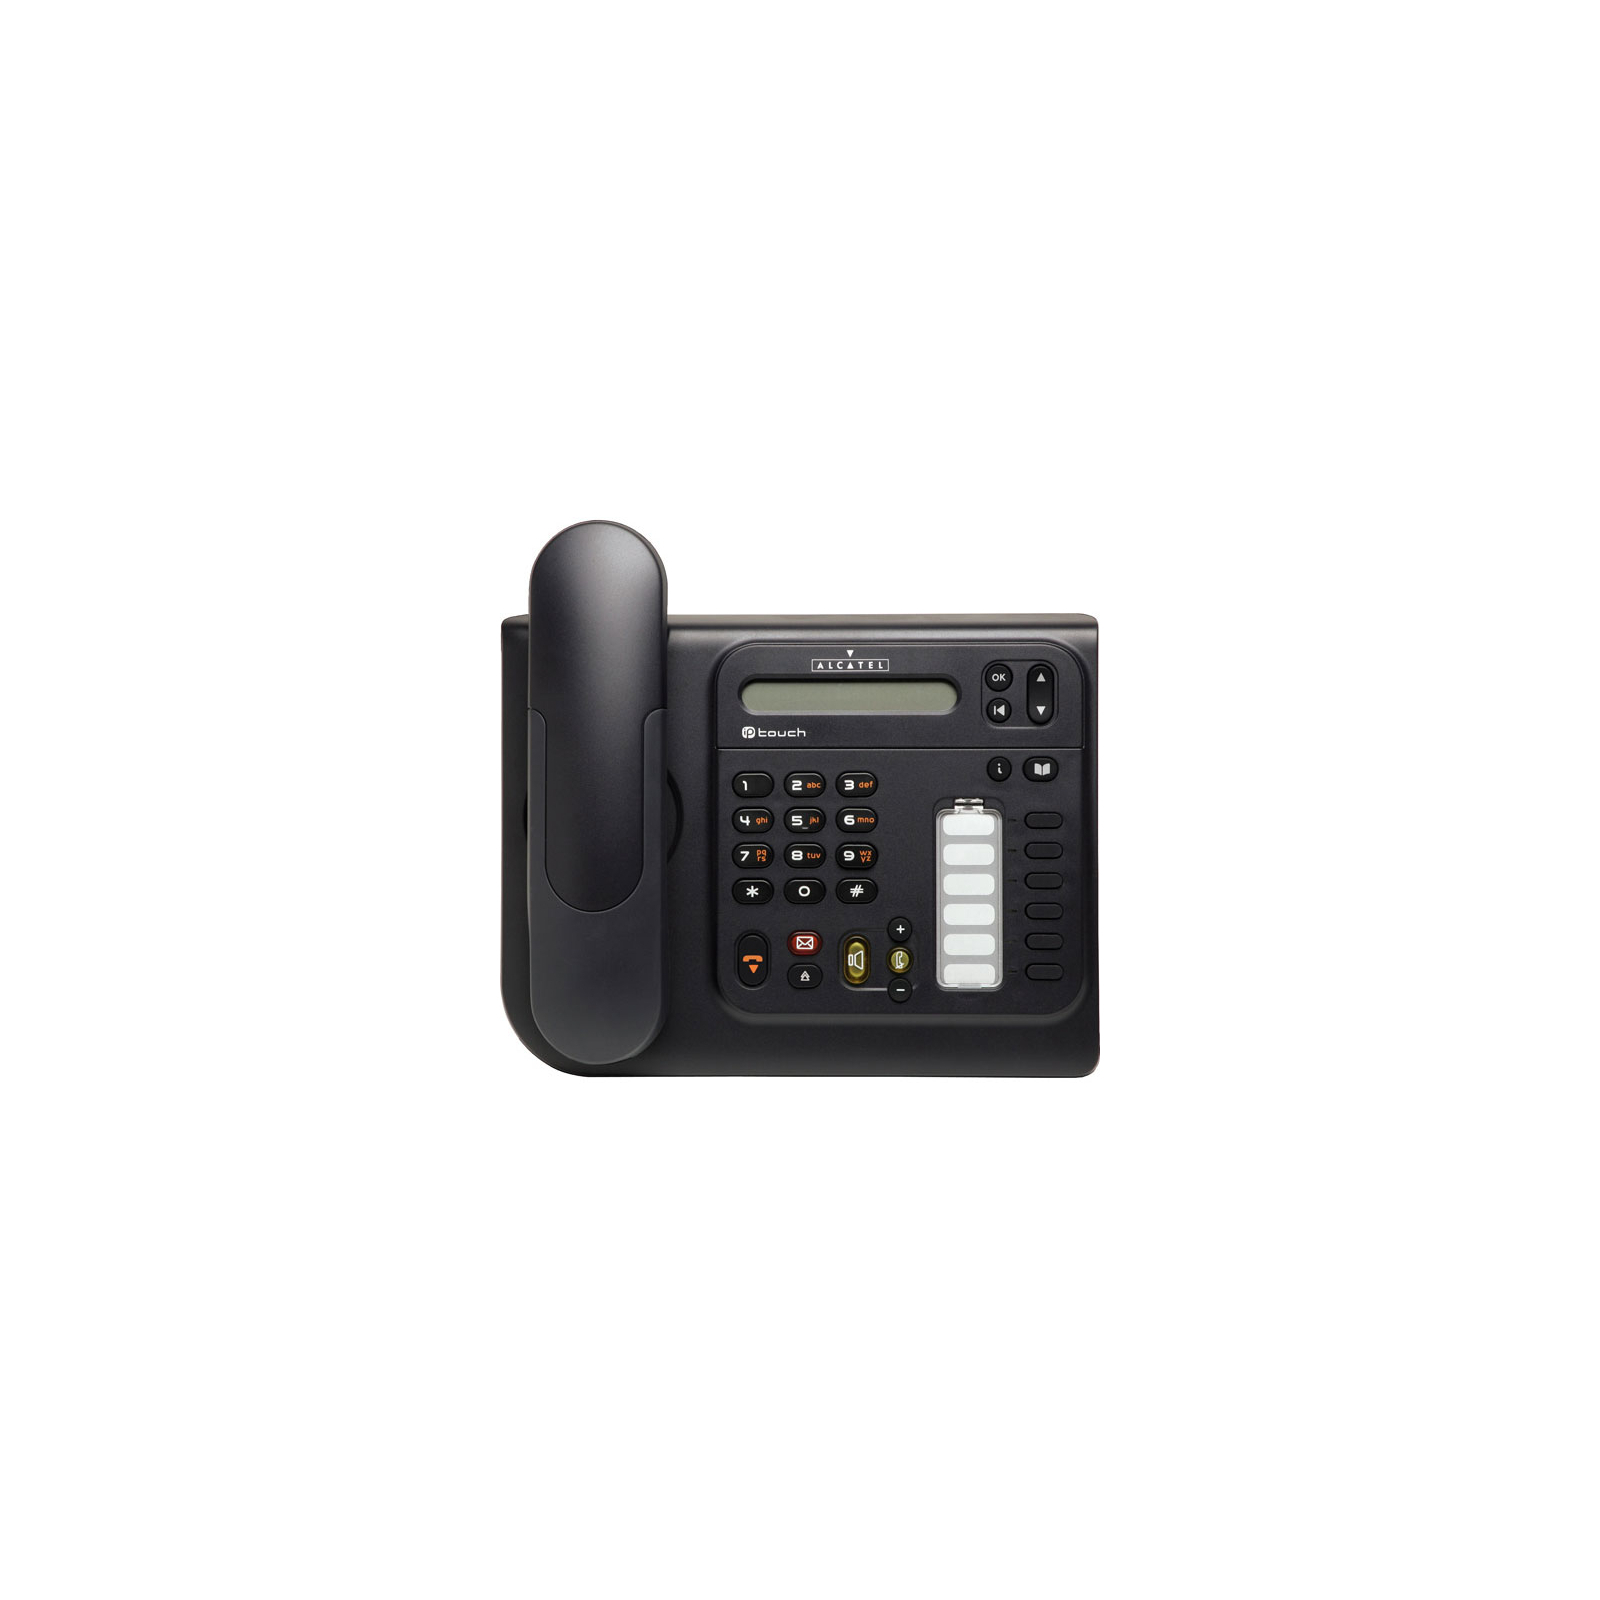 Телефон Alcatel-Lucent 4019 Urban Grey (3GV27011TB) зображення 2